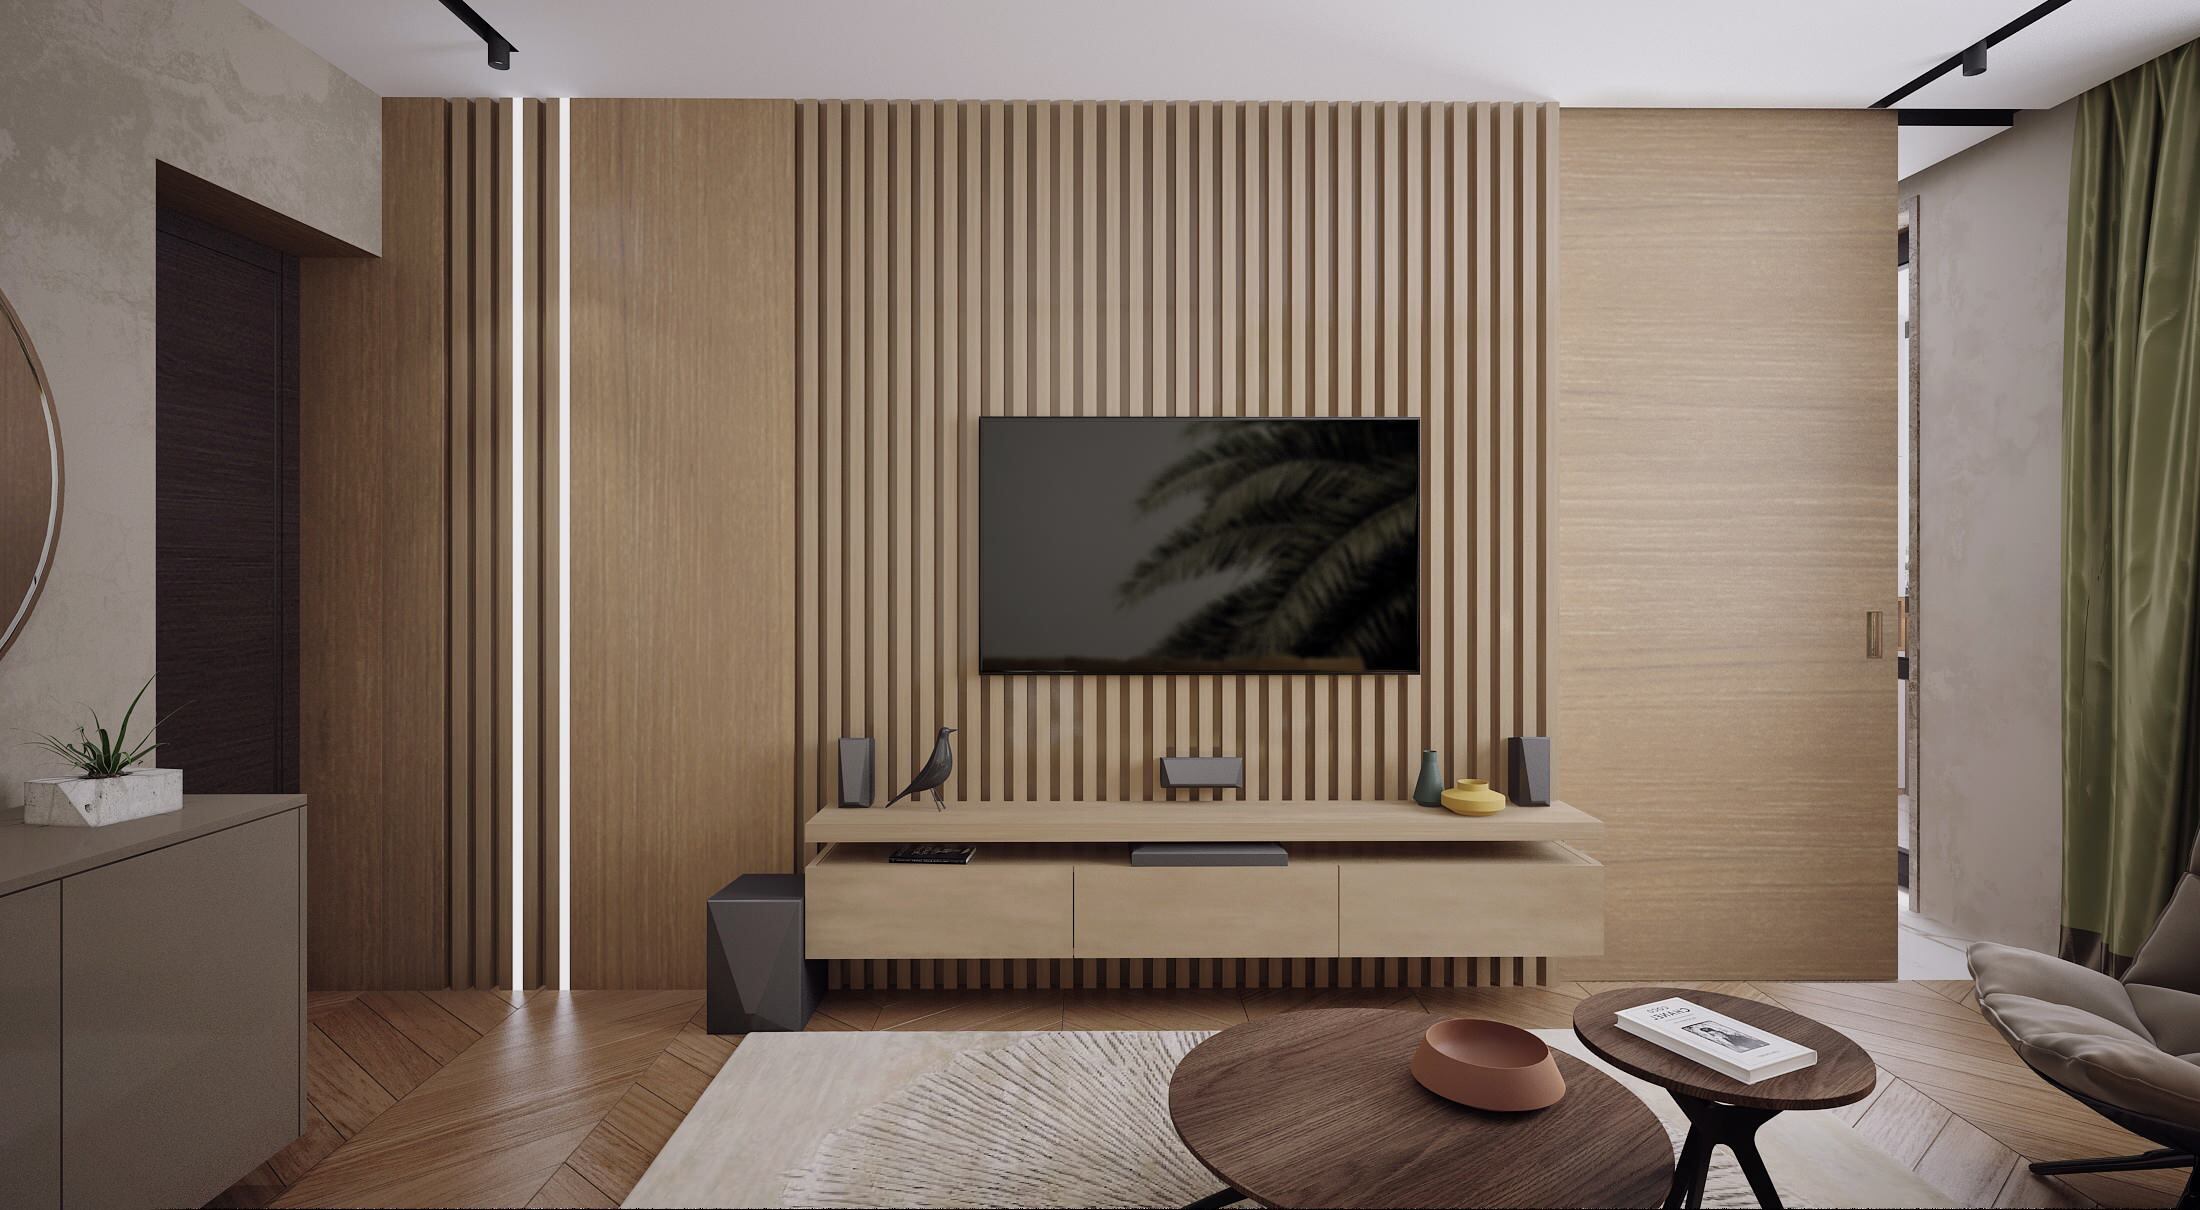 Интерьер гостиной cтеной с телевизором, телевизором на рейках и вертикальными жалюзи